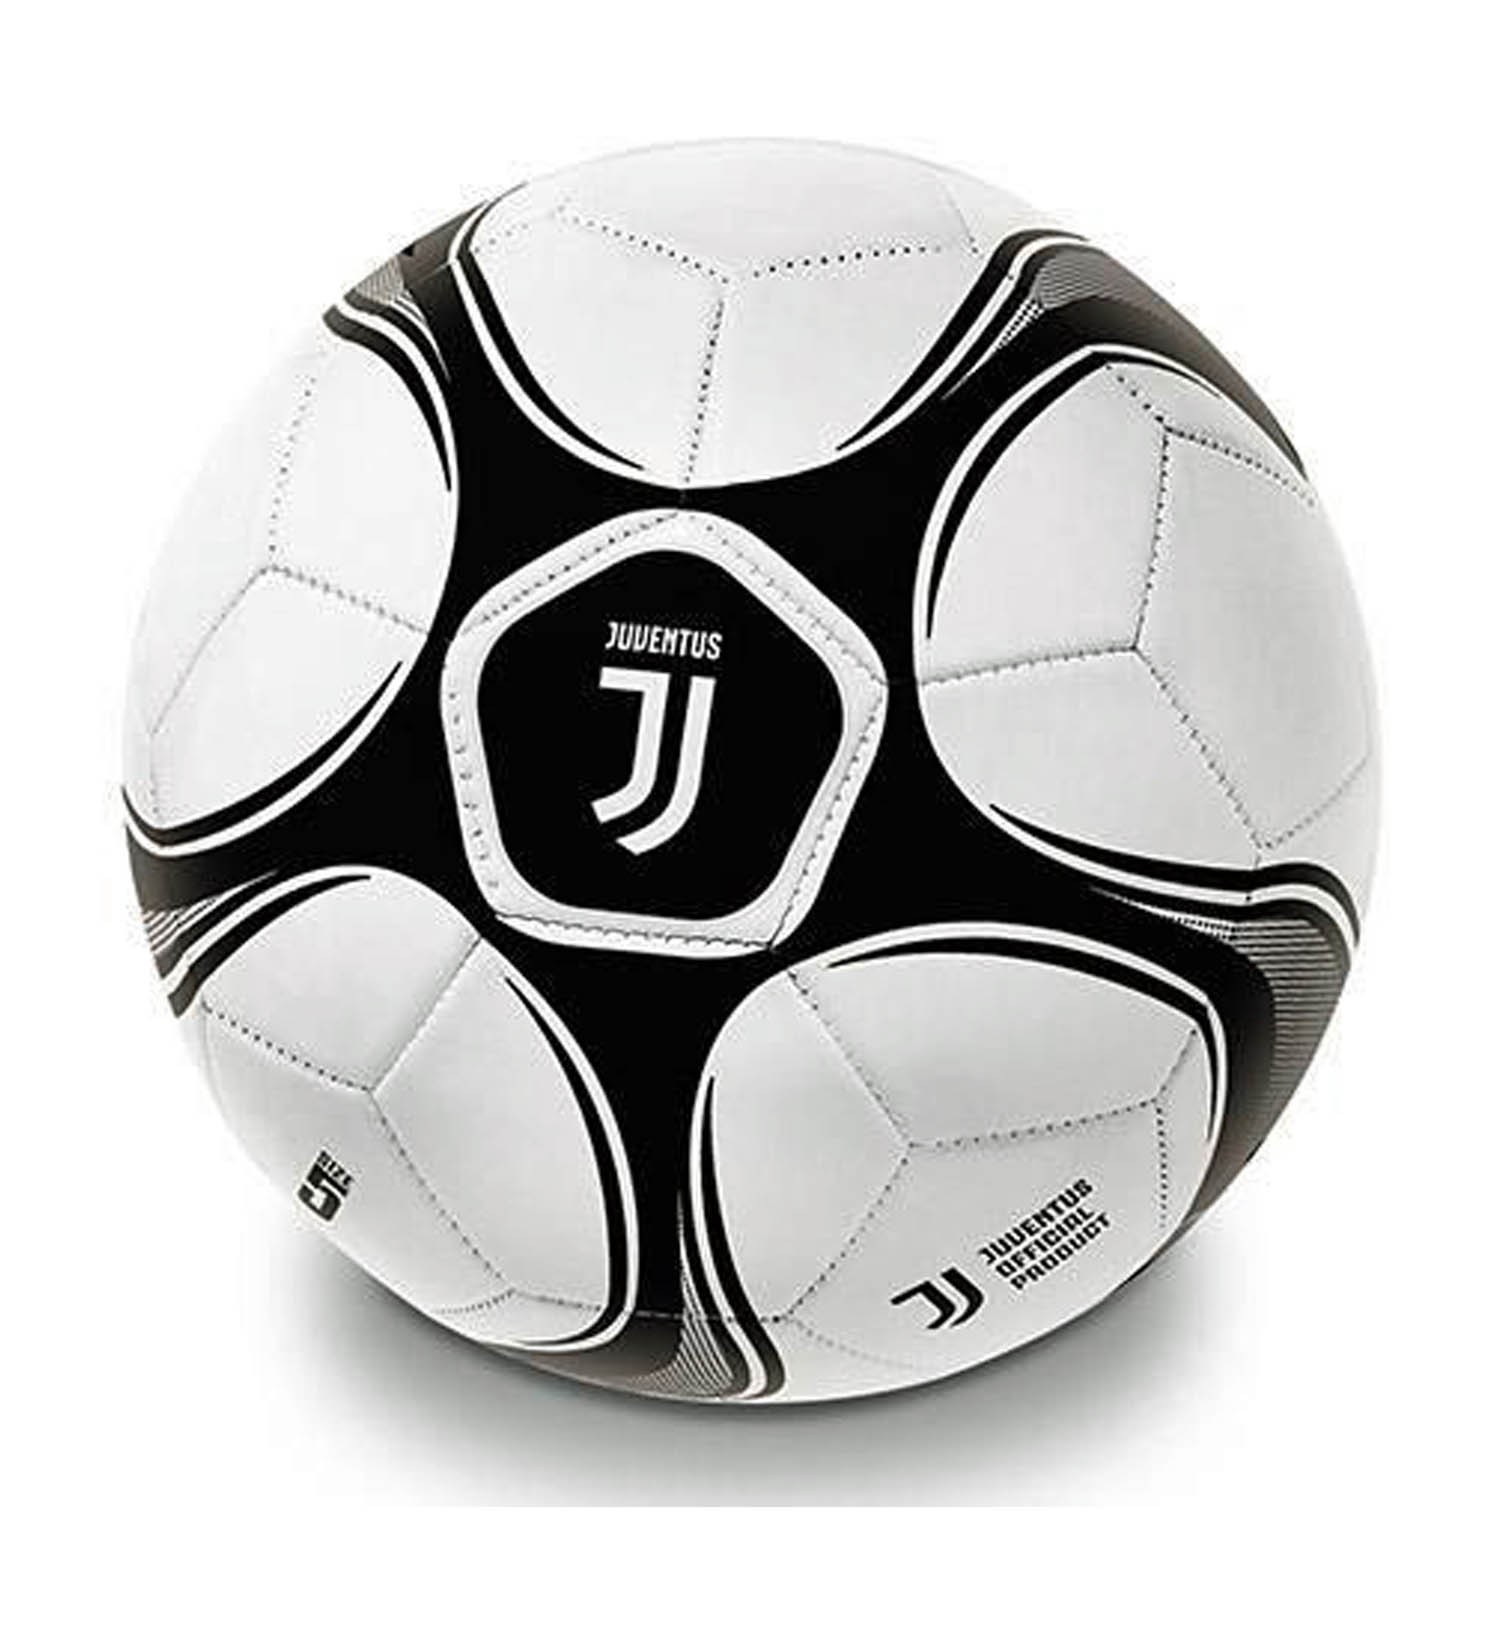 Mini Pallone Calcio Juventus Di Cuoio Misura 2 Prodotto Ufficiale 